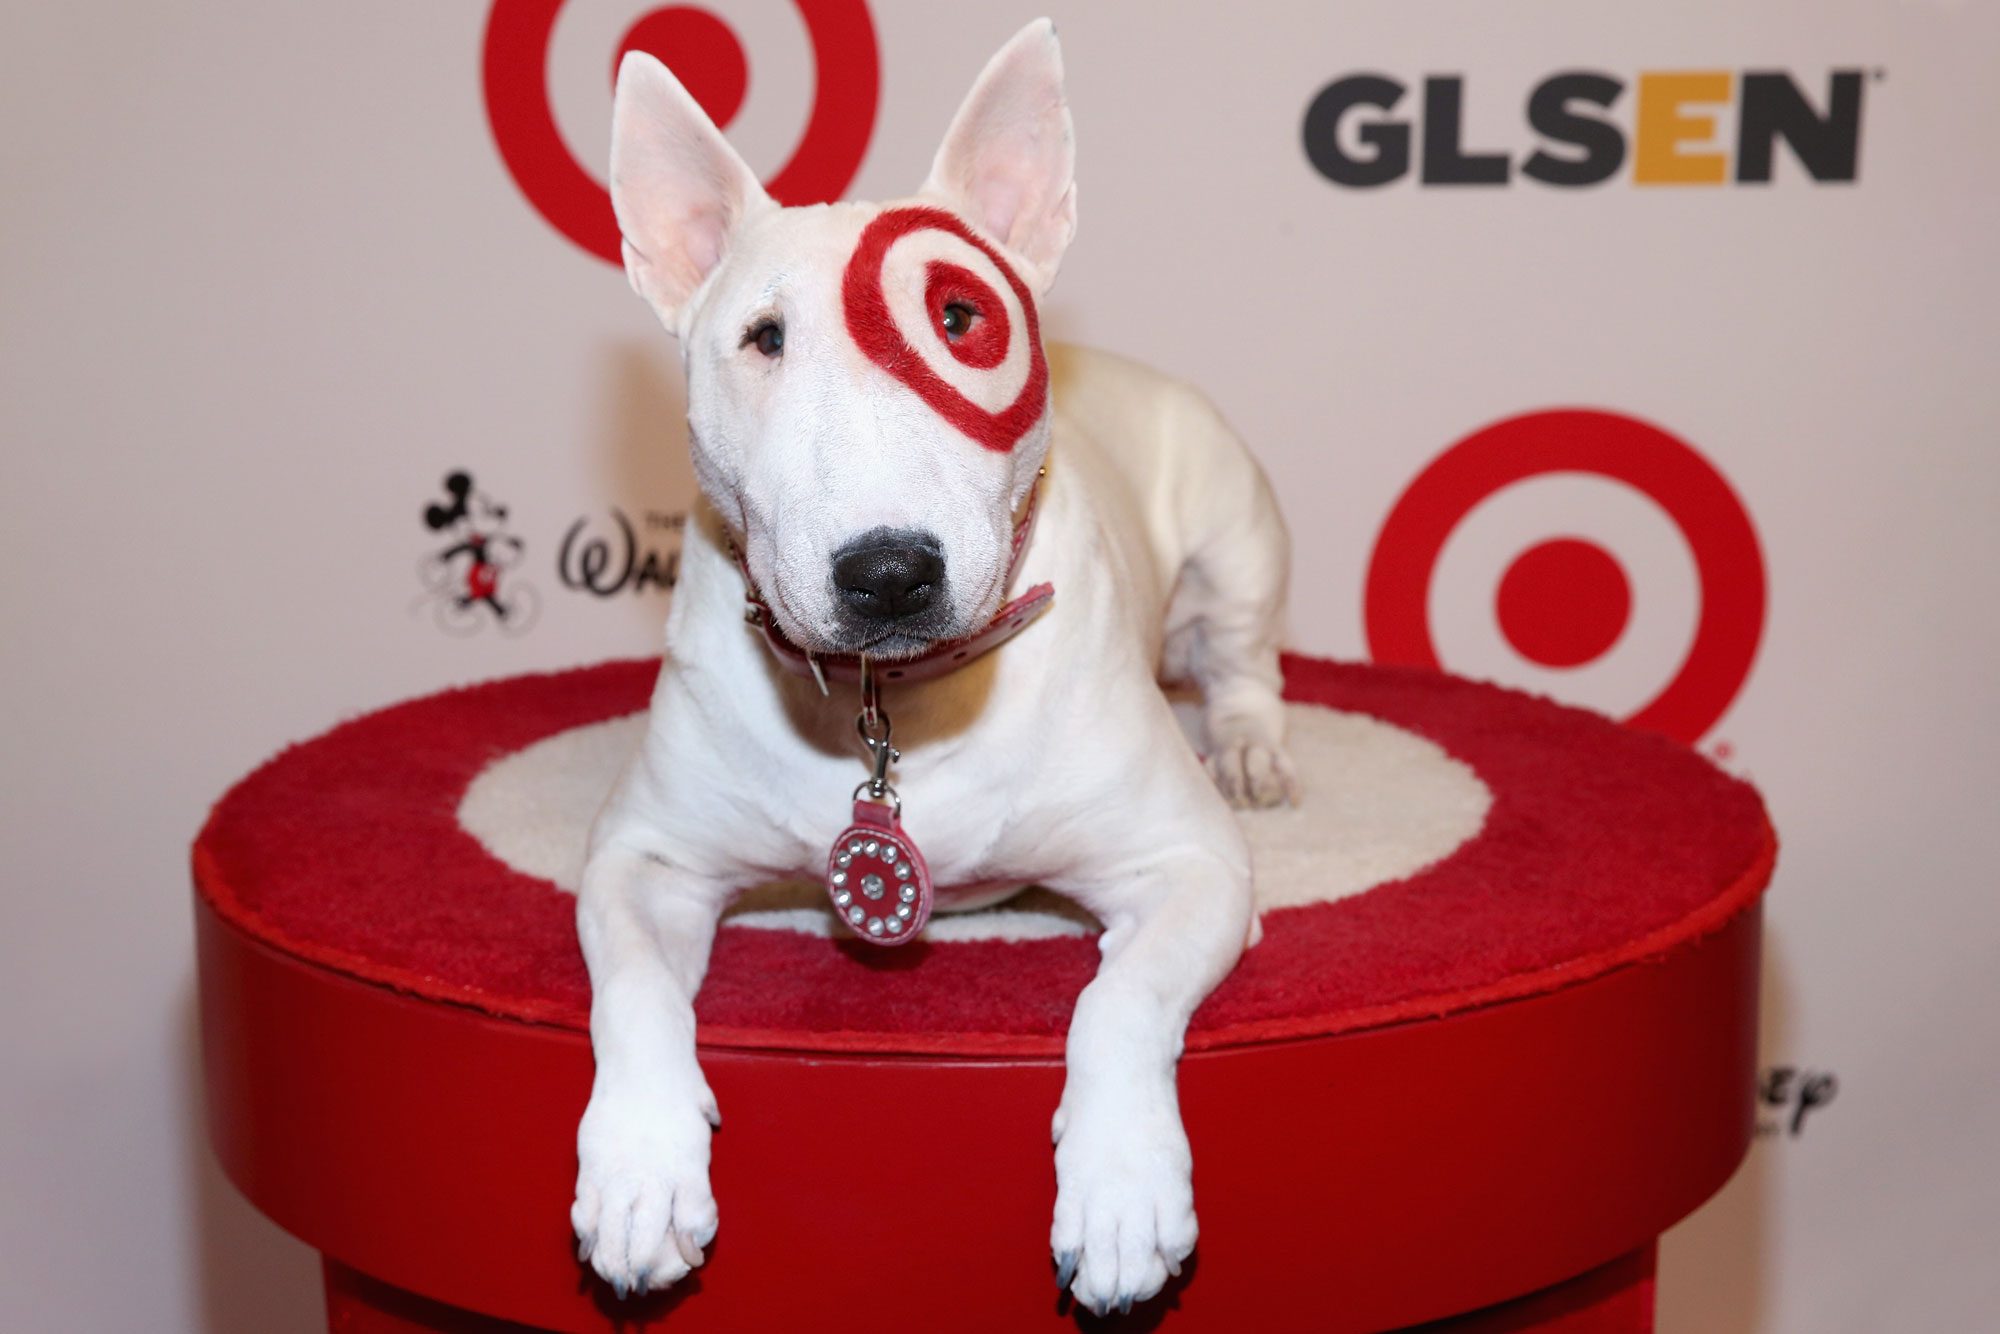 bullseye-the-target-dog-GettyImages-457402800-MLedit.jpg